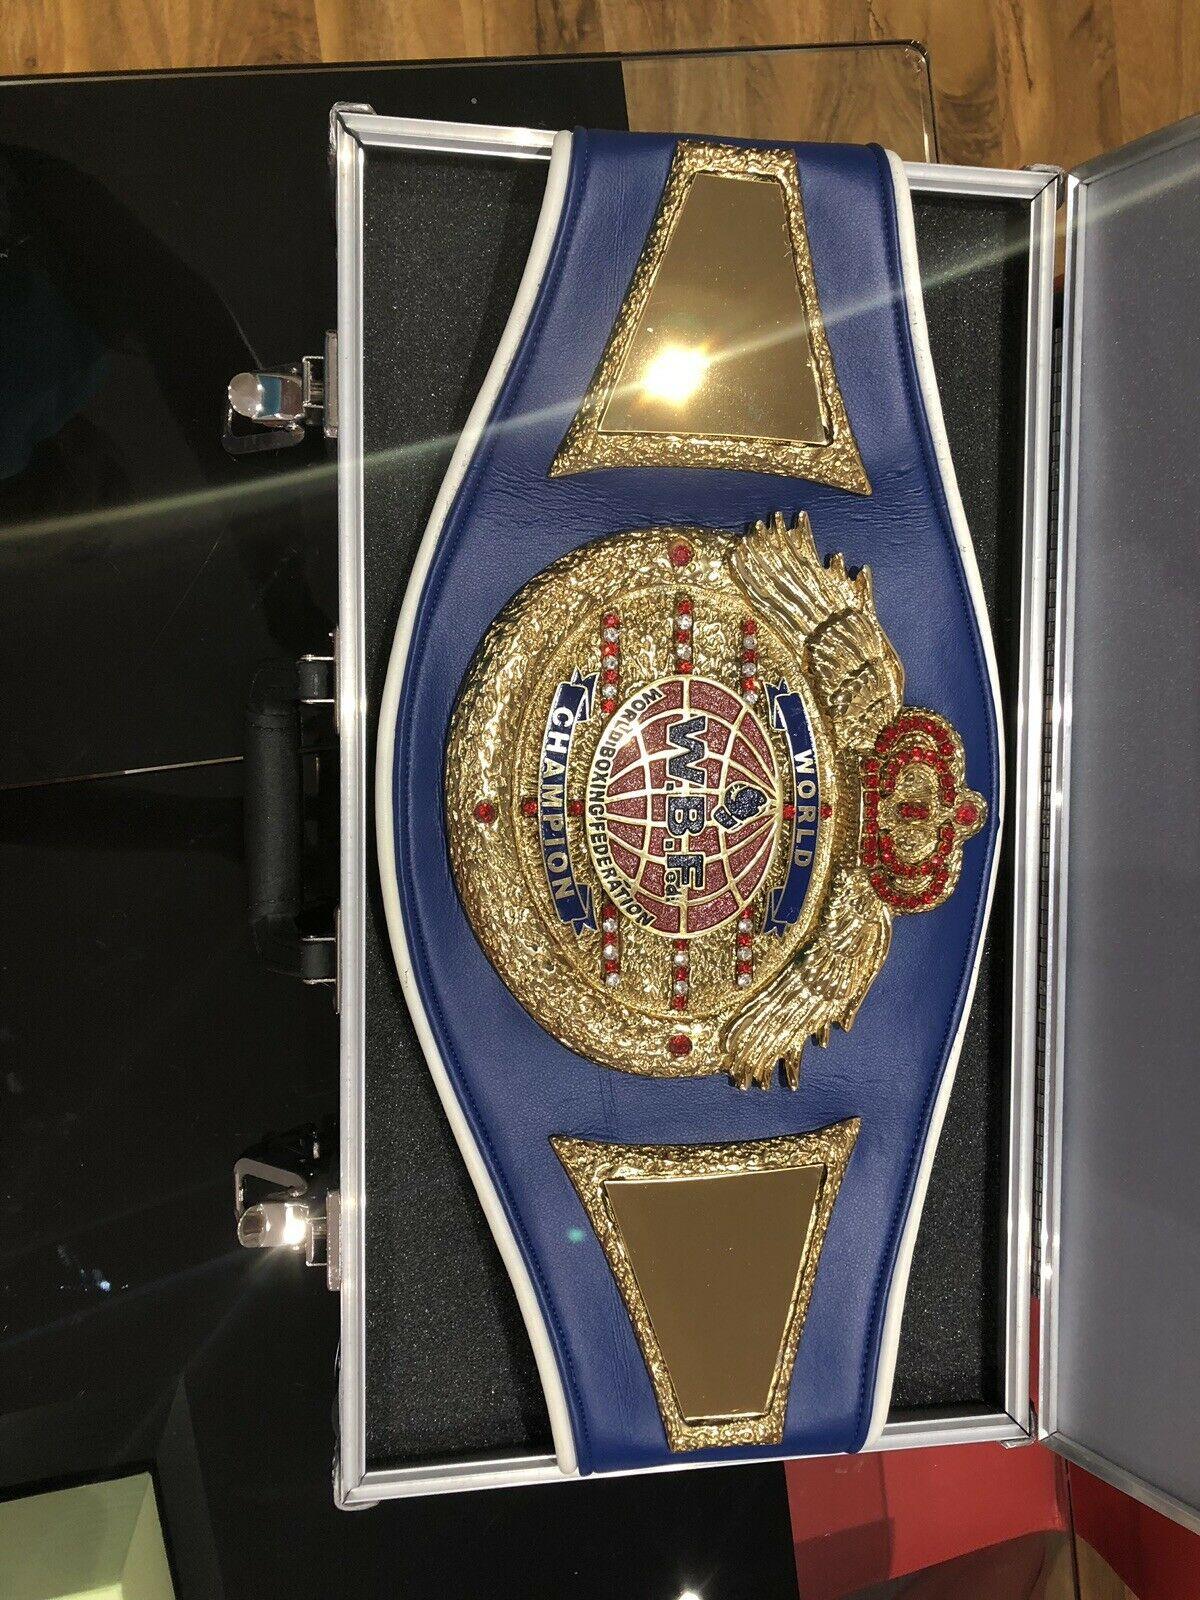 WBF Boxing Championship Belt - Zees Belts